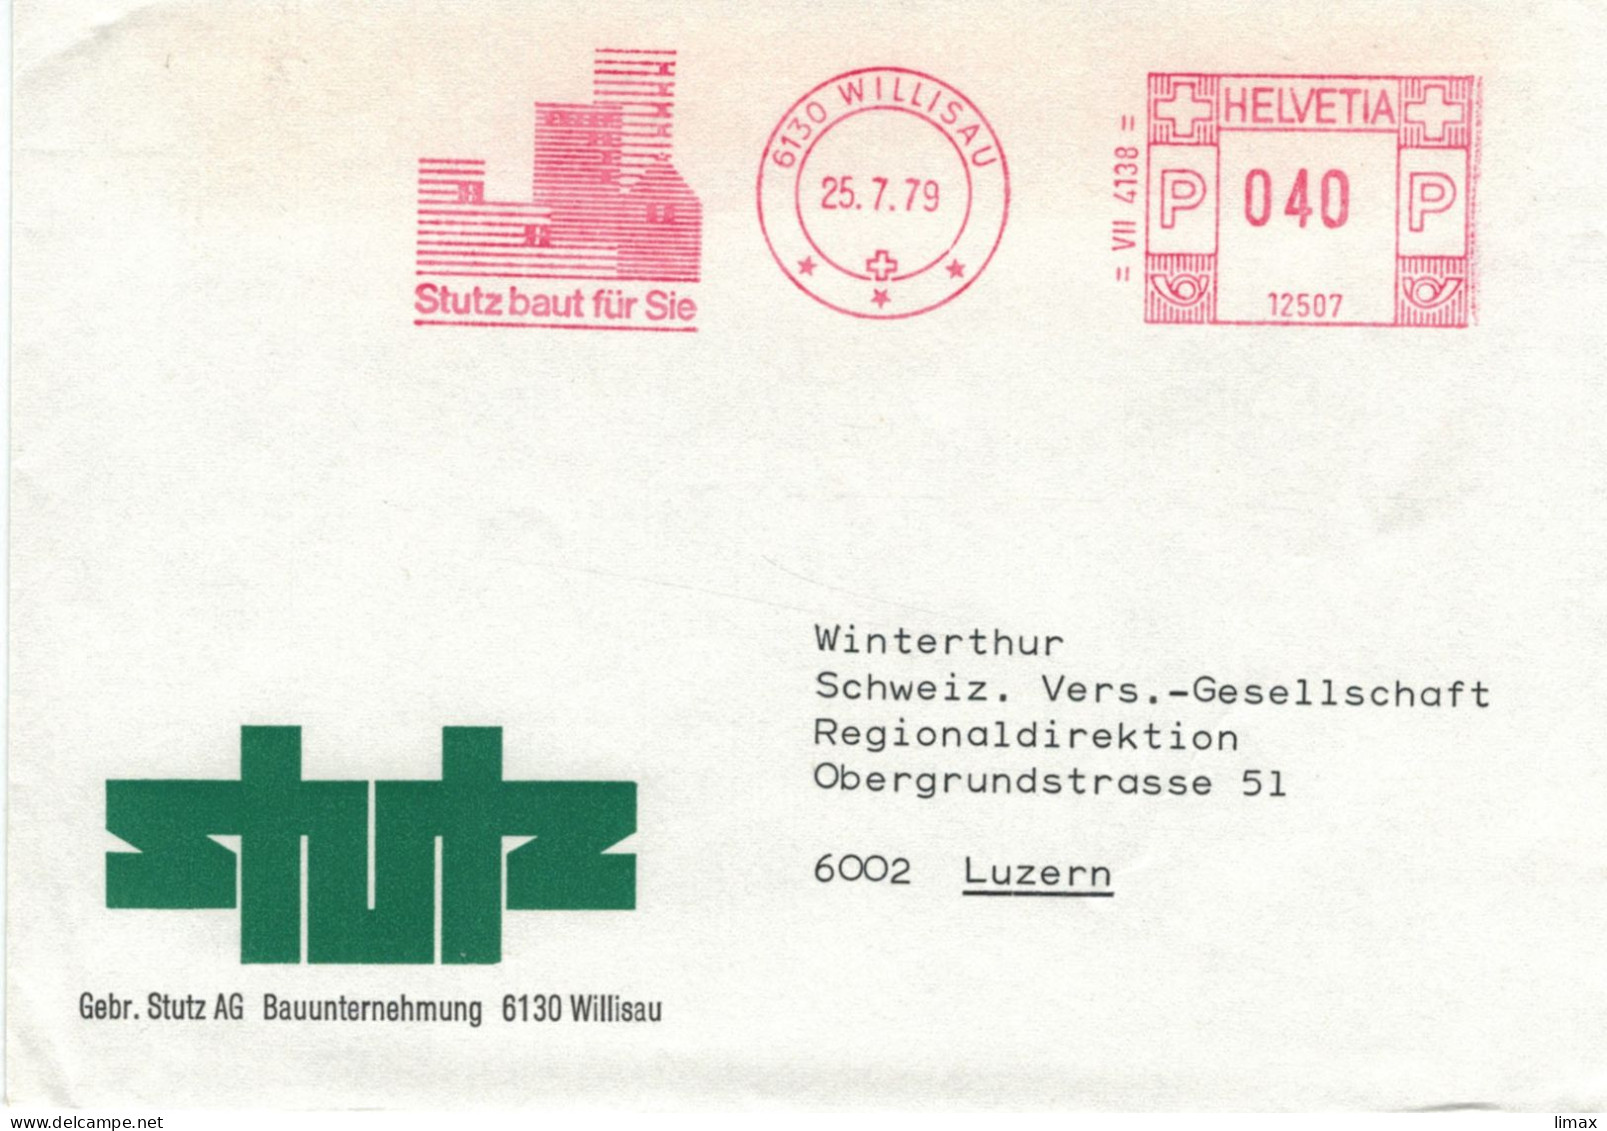 Stutz Bauunternehmung 6130 Willisau 1979 - Stempel 12507 - Frankeermachinen